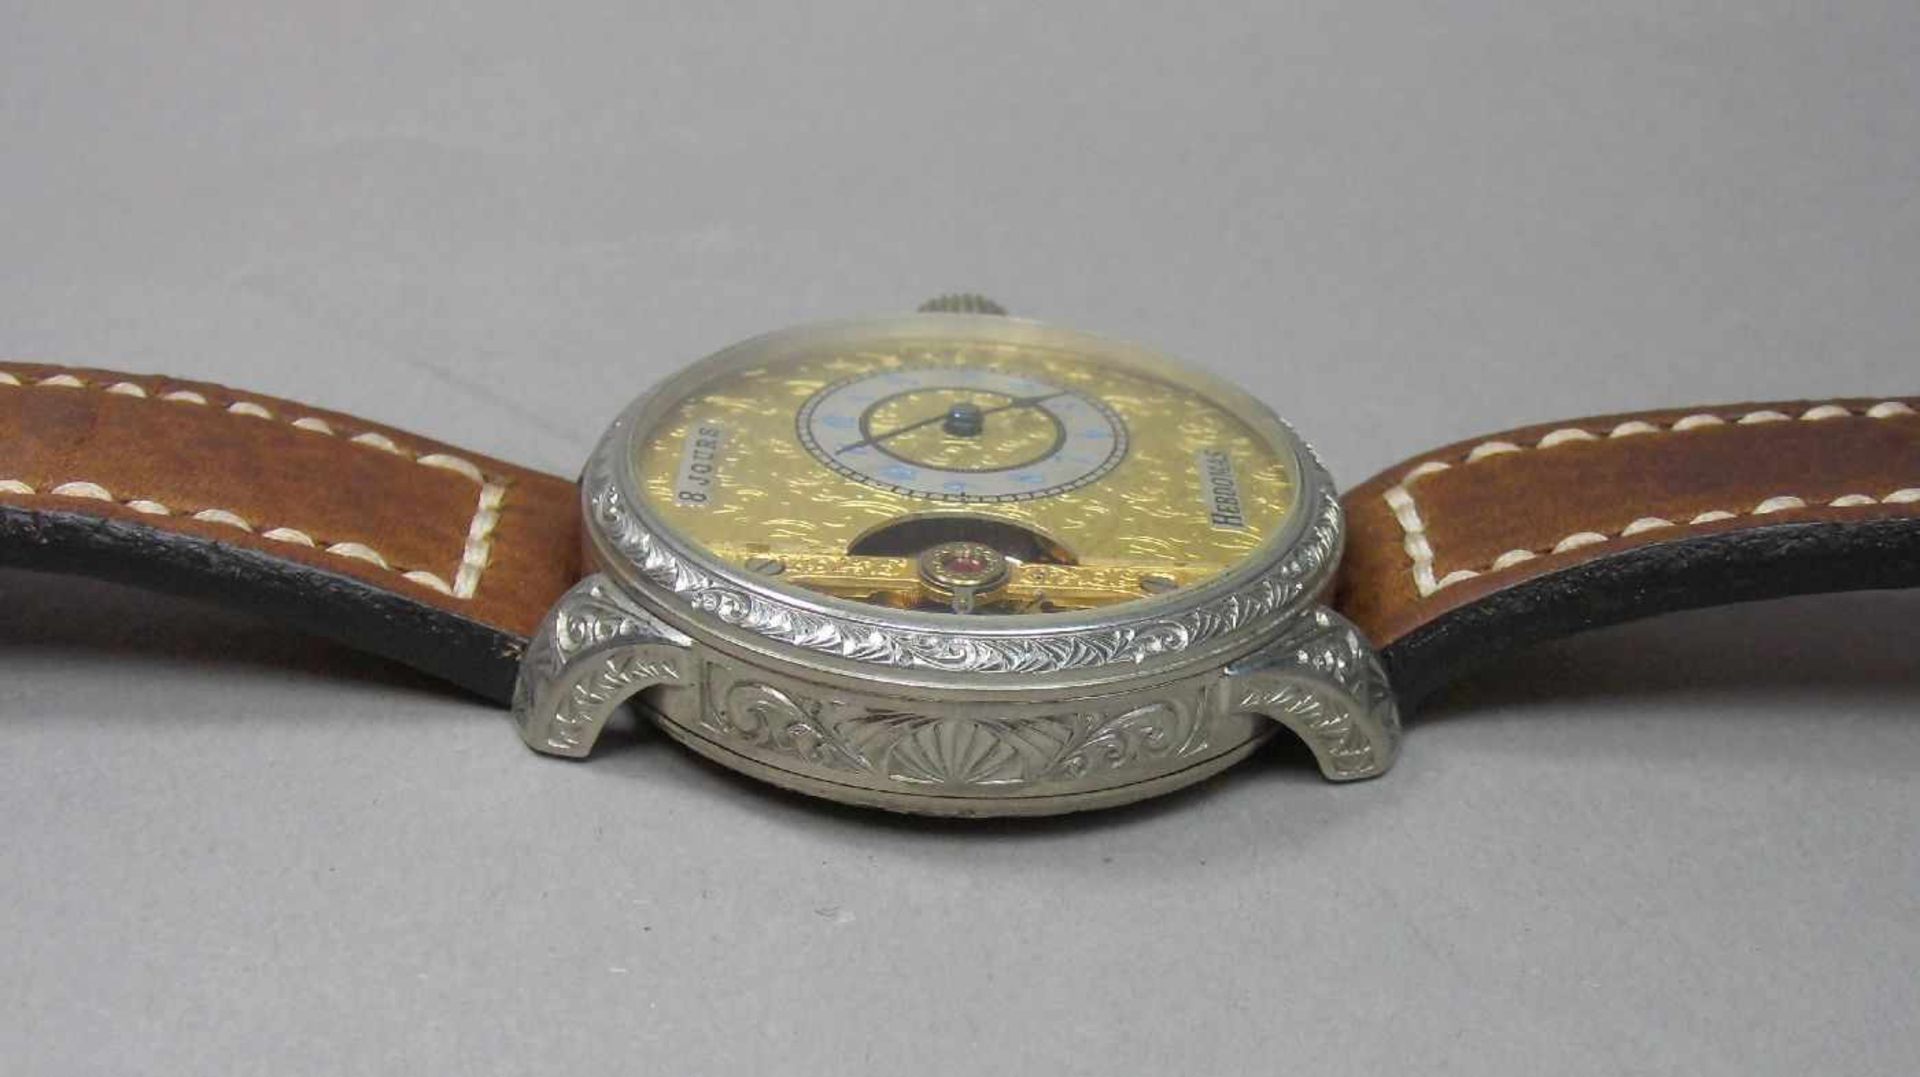 ARMBANDUHR, gearbeitet aus einer Taschenuhr / Mariage / wristwatch, 20. Jh., Handaufzug (Krone). - Image 3 of 7